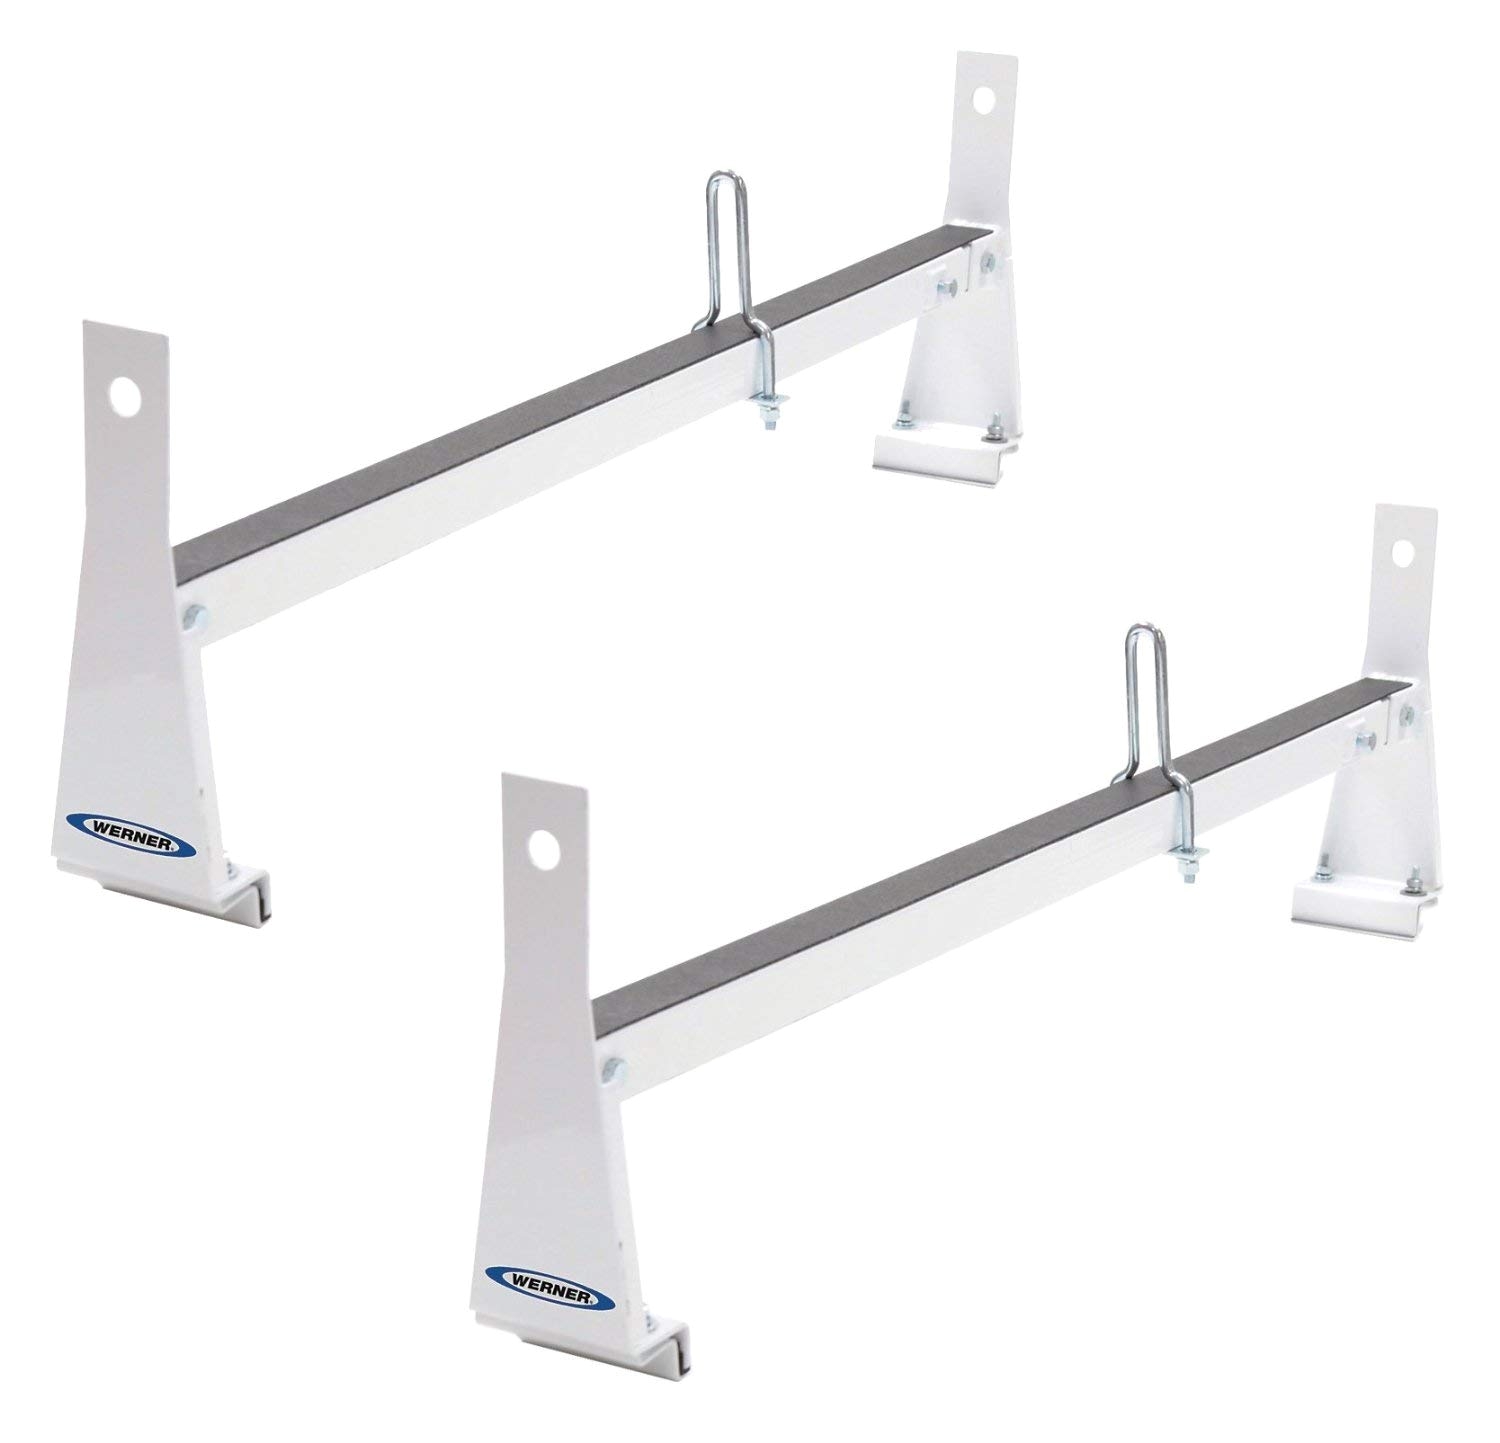 Werner Ladder Racks for Vans Amazon Com Werner Vr401 W 2 Bar Steel Ladder Rack for Vans White